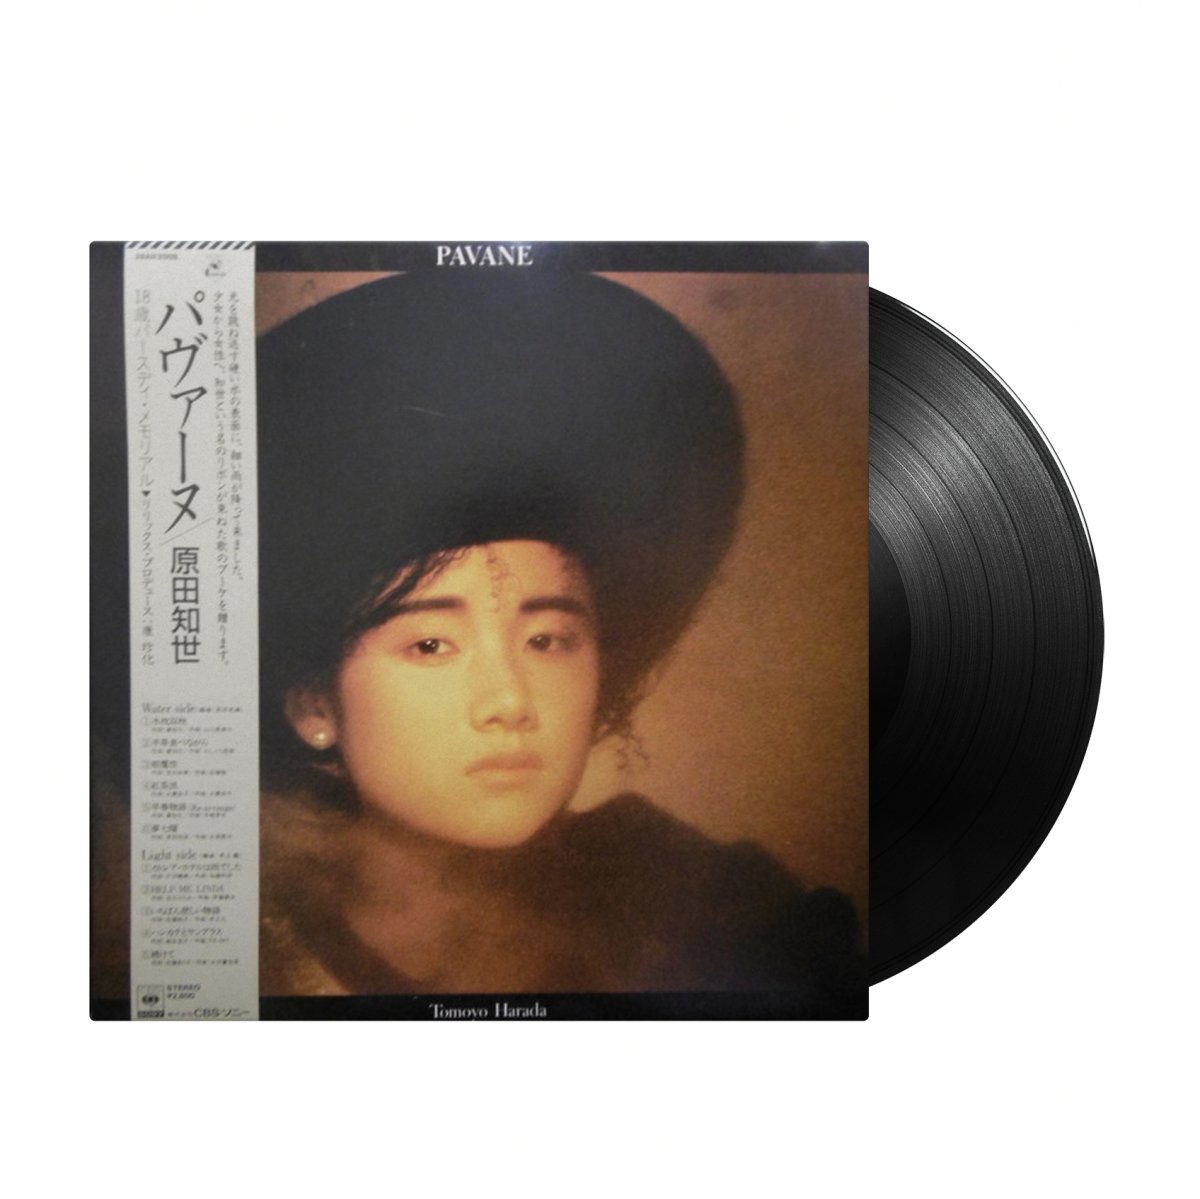 Tomoyo Harada - Pavane (Japan Import) - Inner Ocean Records